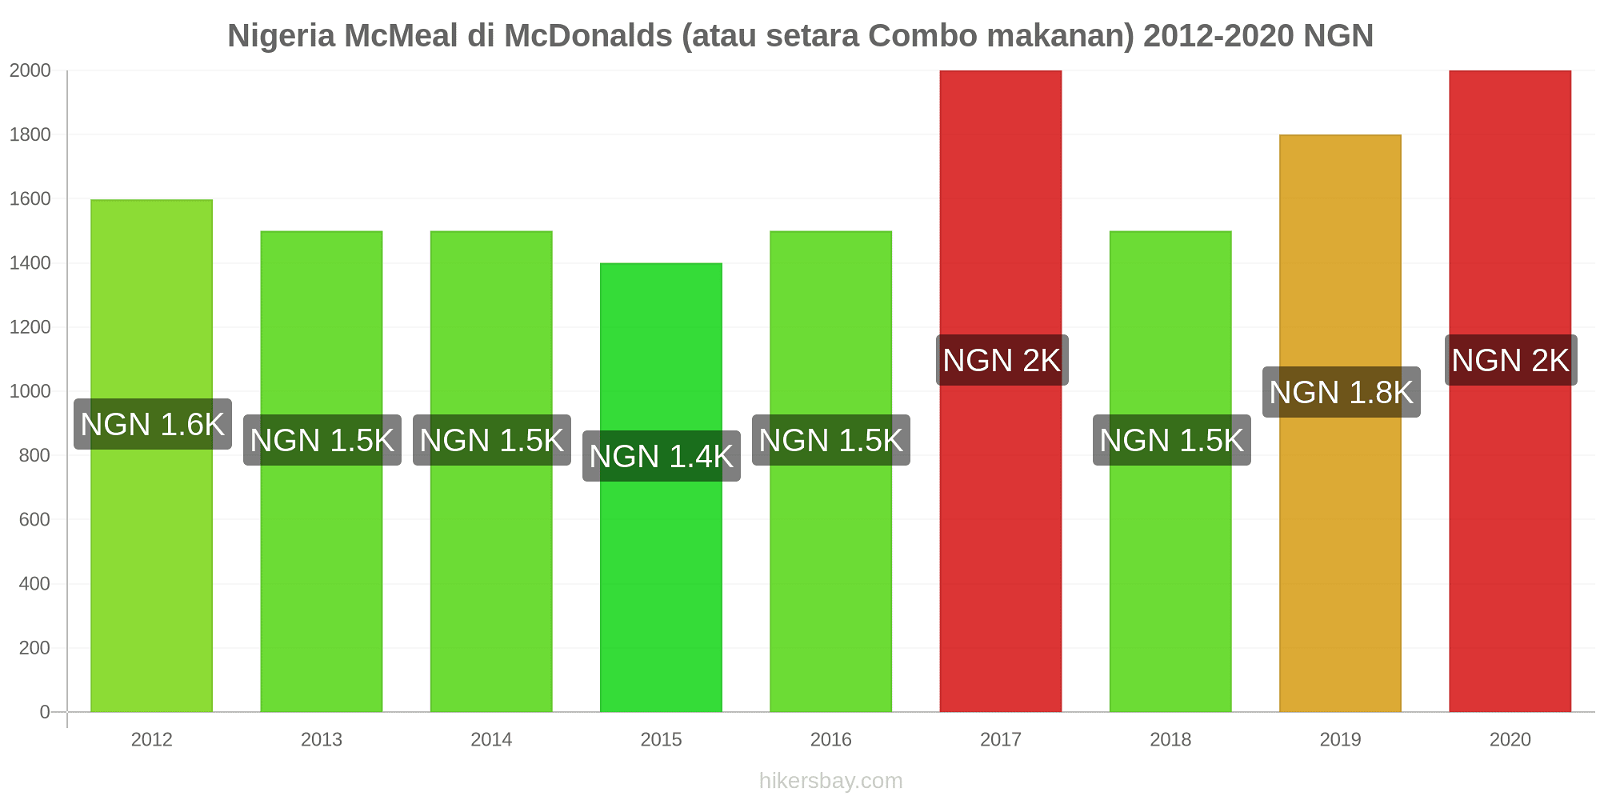 Nigeria perubahan harga McMeal di McDonalds (atau setara Combo makanan) hikersbay.com